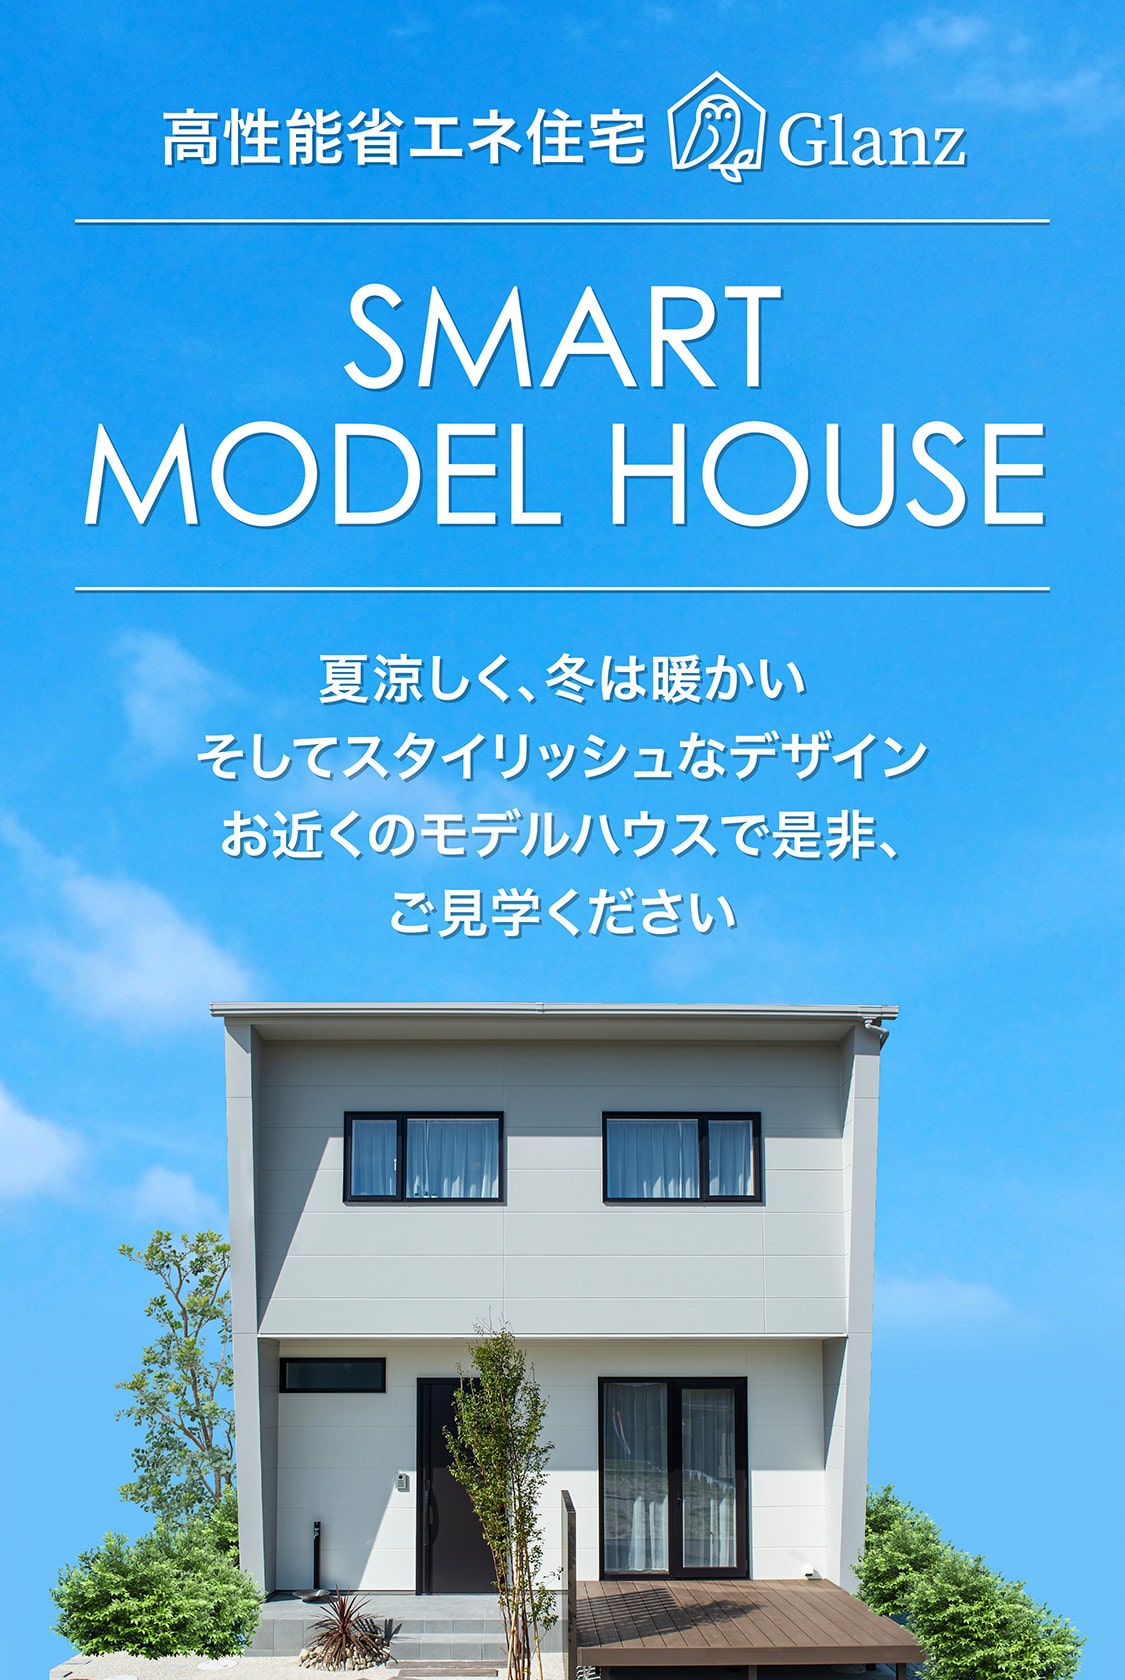 高性能省エネ住宅Glanz SMART MODEL HOUSE 夏涼しく、冬は暖かい そしてスタイリッシュなデザイン モデルハウスで是非、ご見学ください